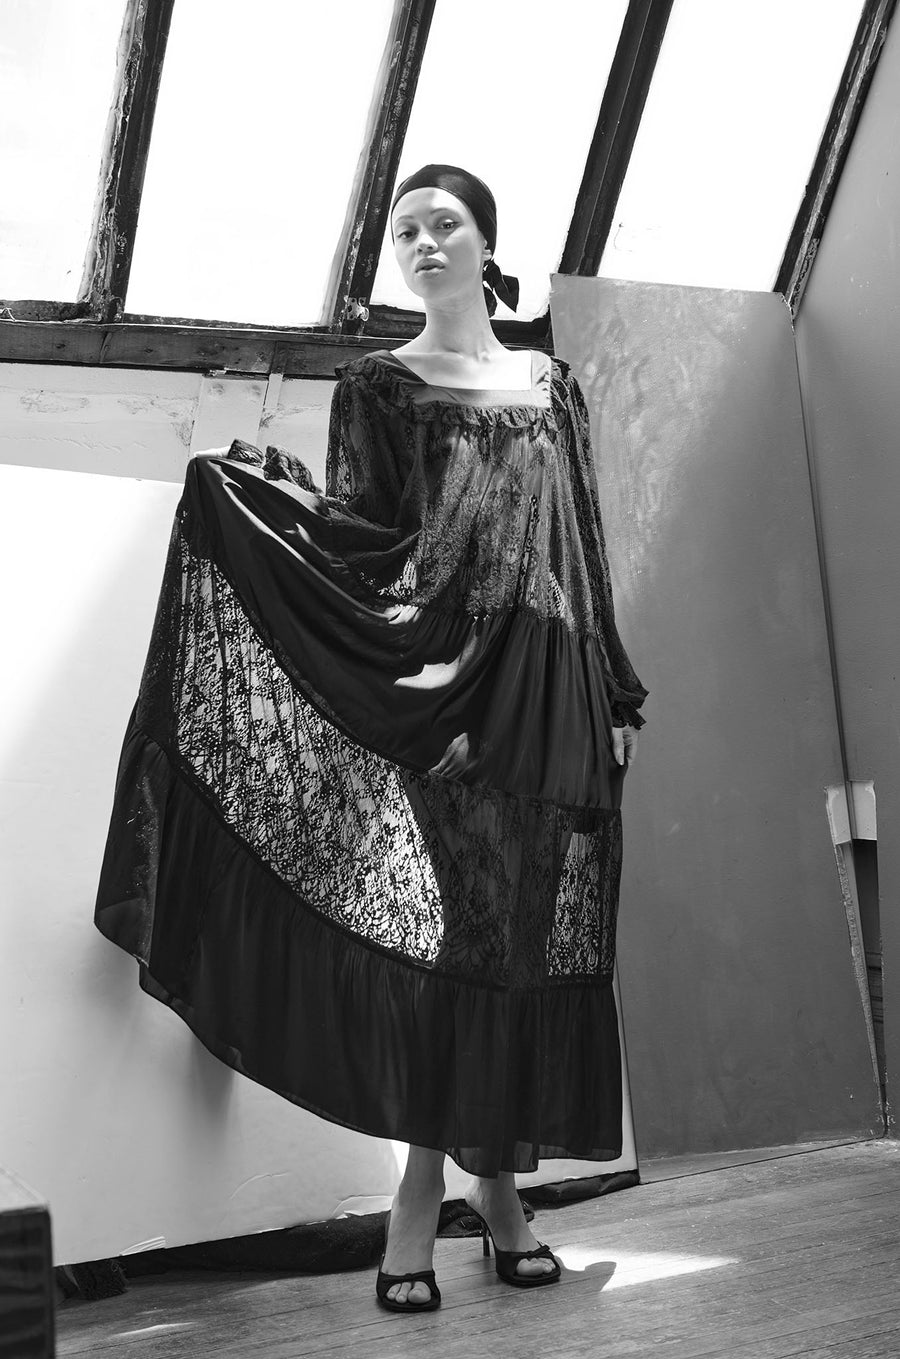 BATSHEVA - Phoebe Dress in Black Satin